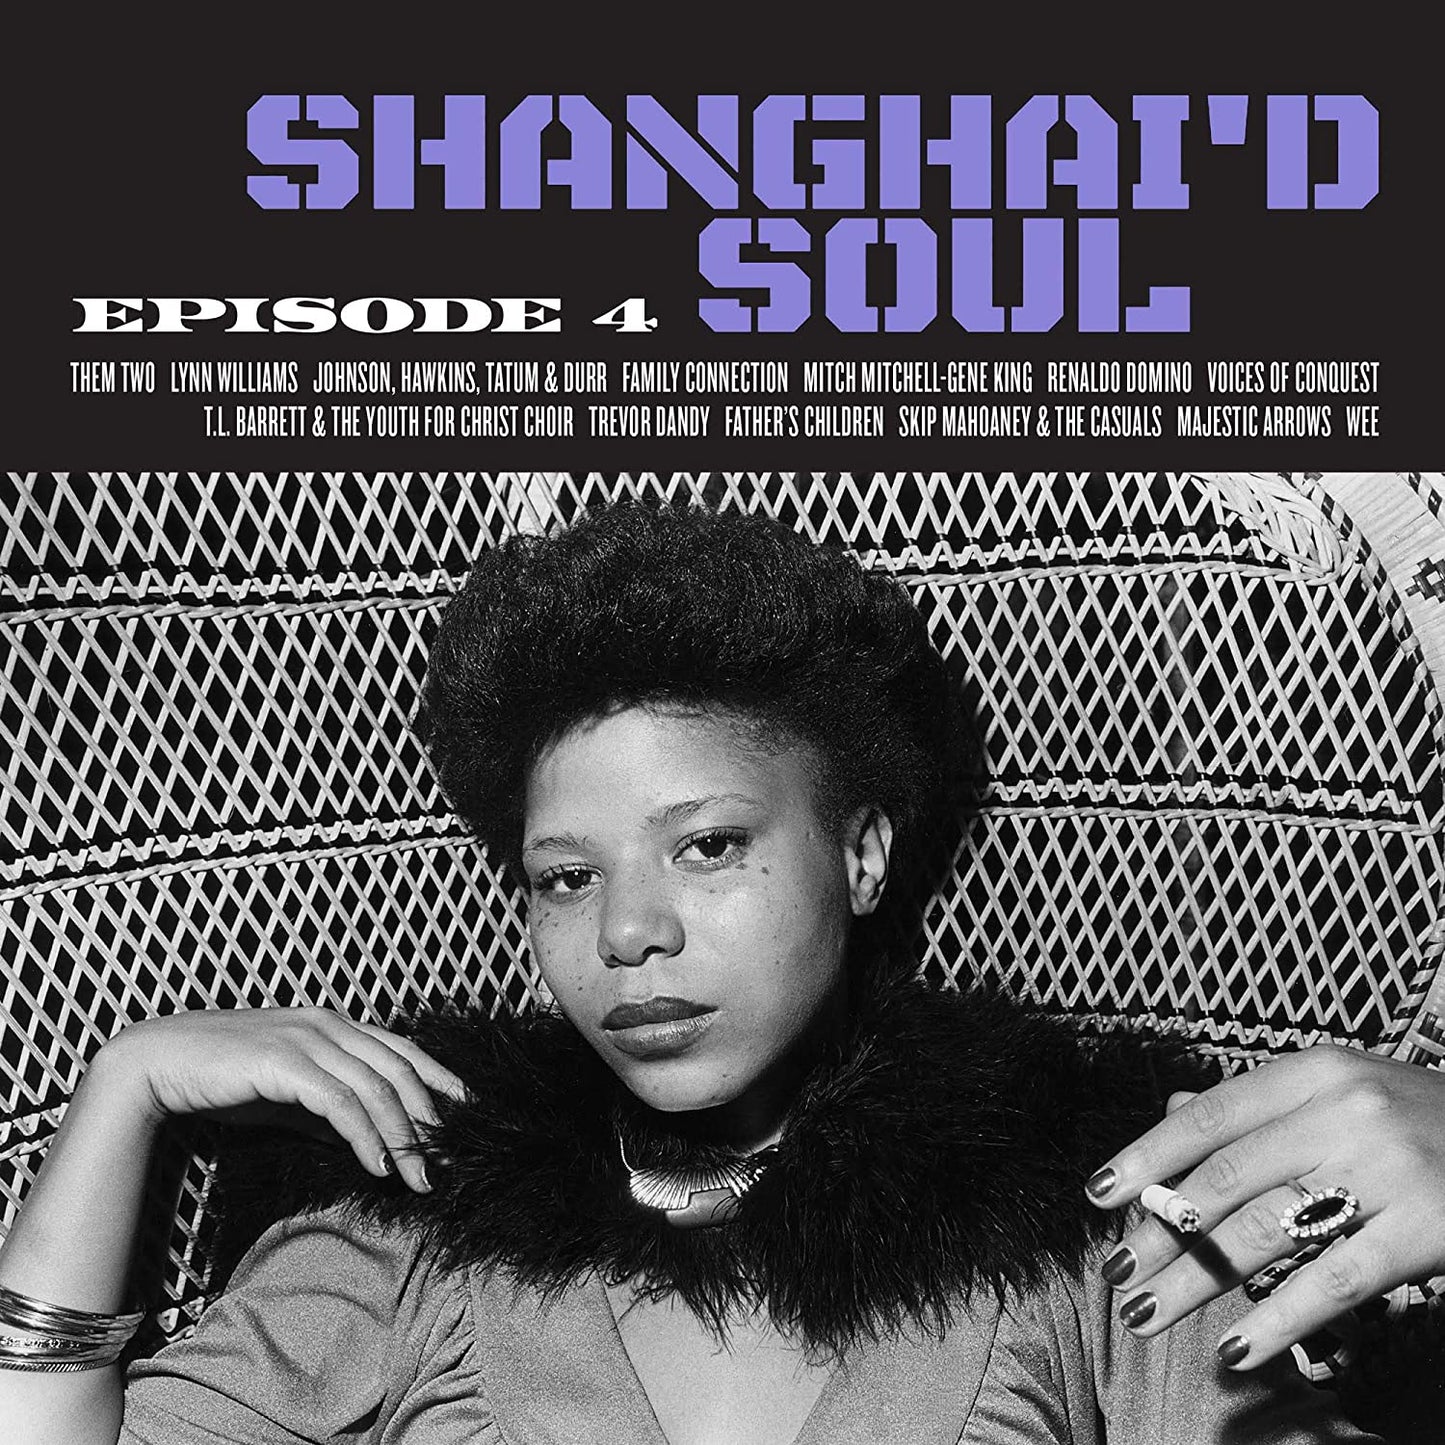 Various Artists/Shanghai'd Soul: Episode 4 (Purple Vinyl) [LP]